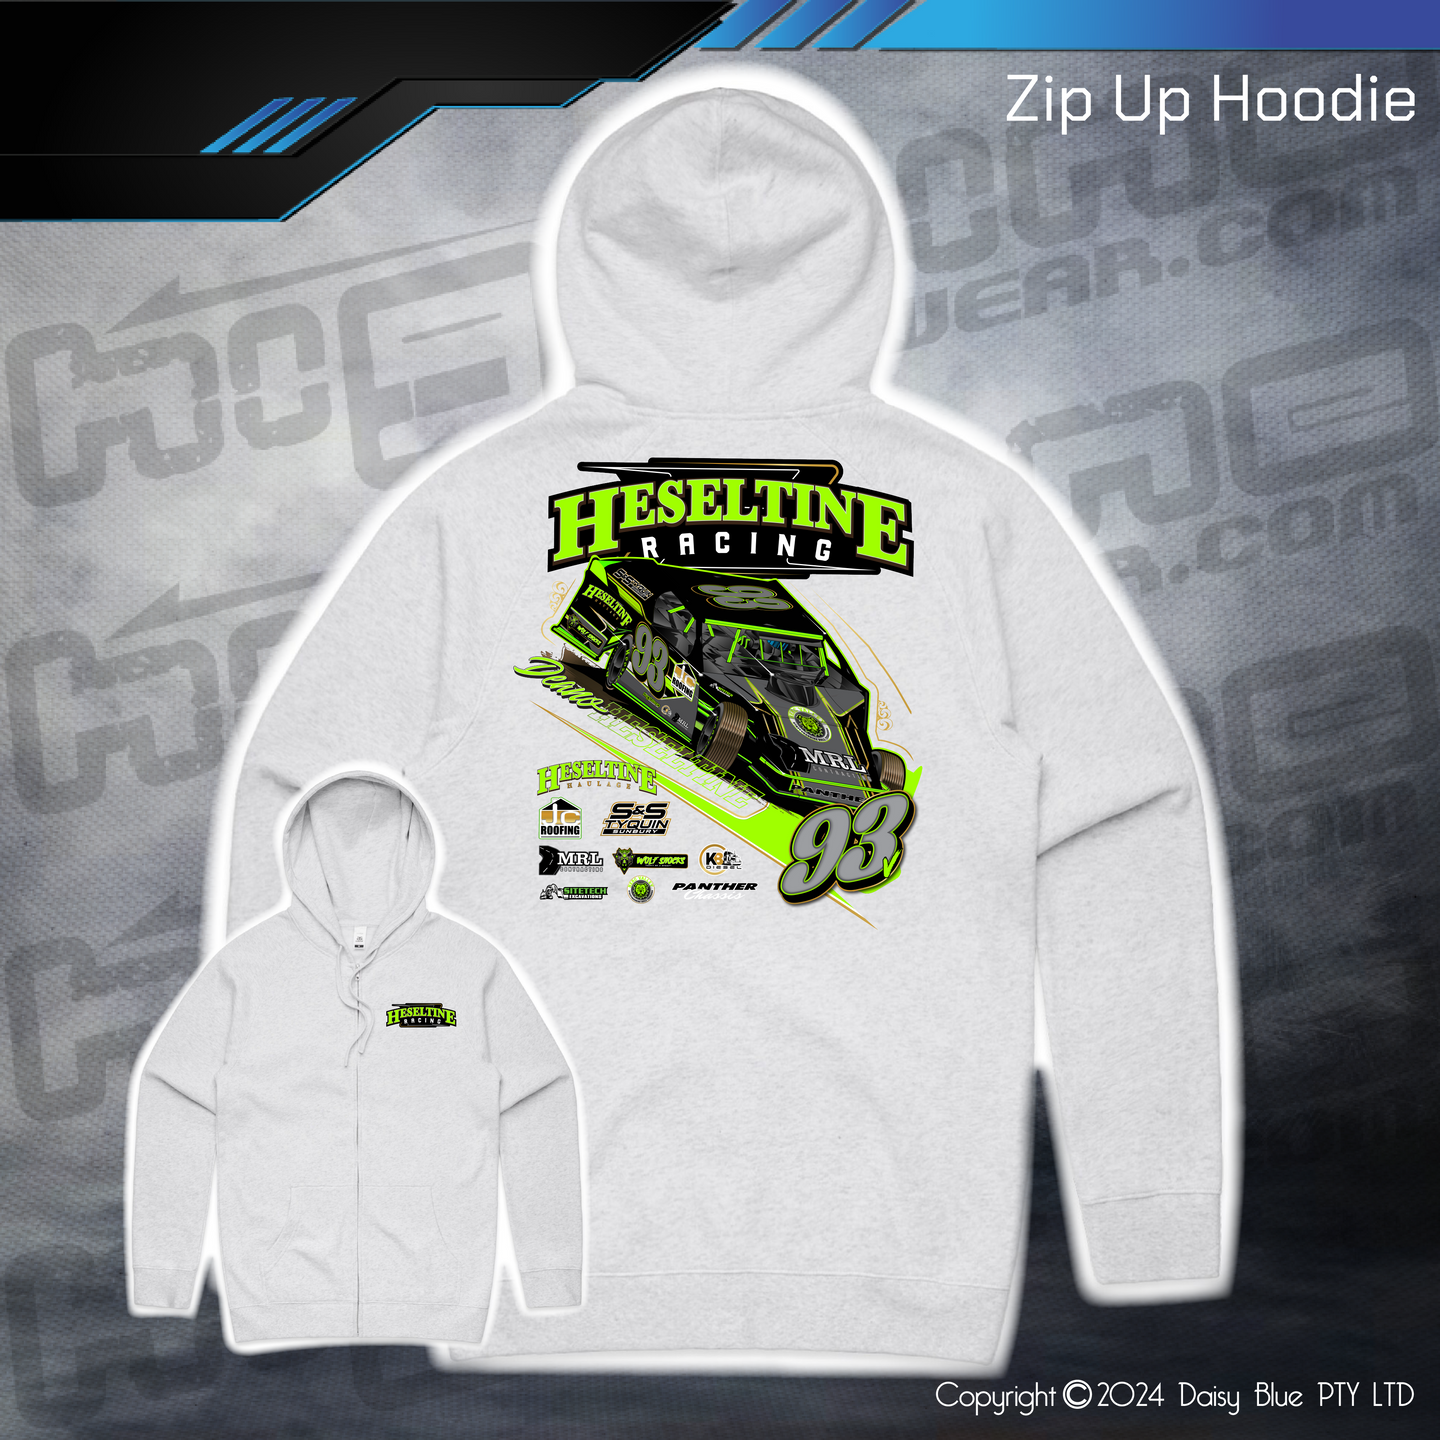 Zip Up Hoodie - Dean Heseltine